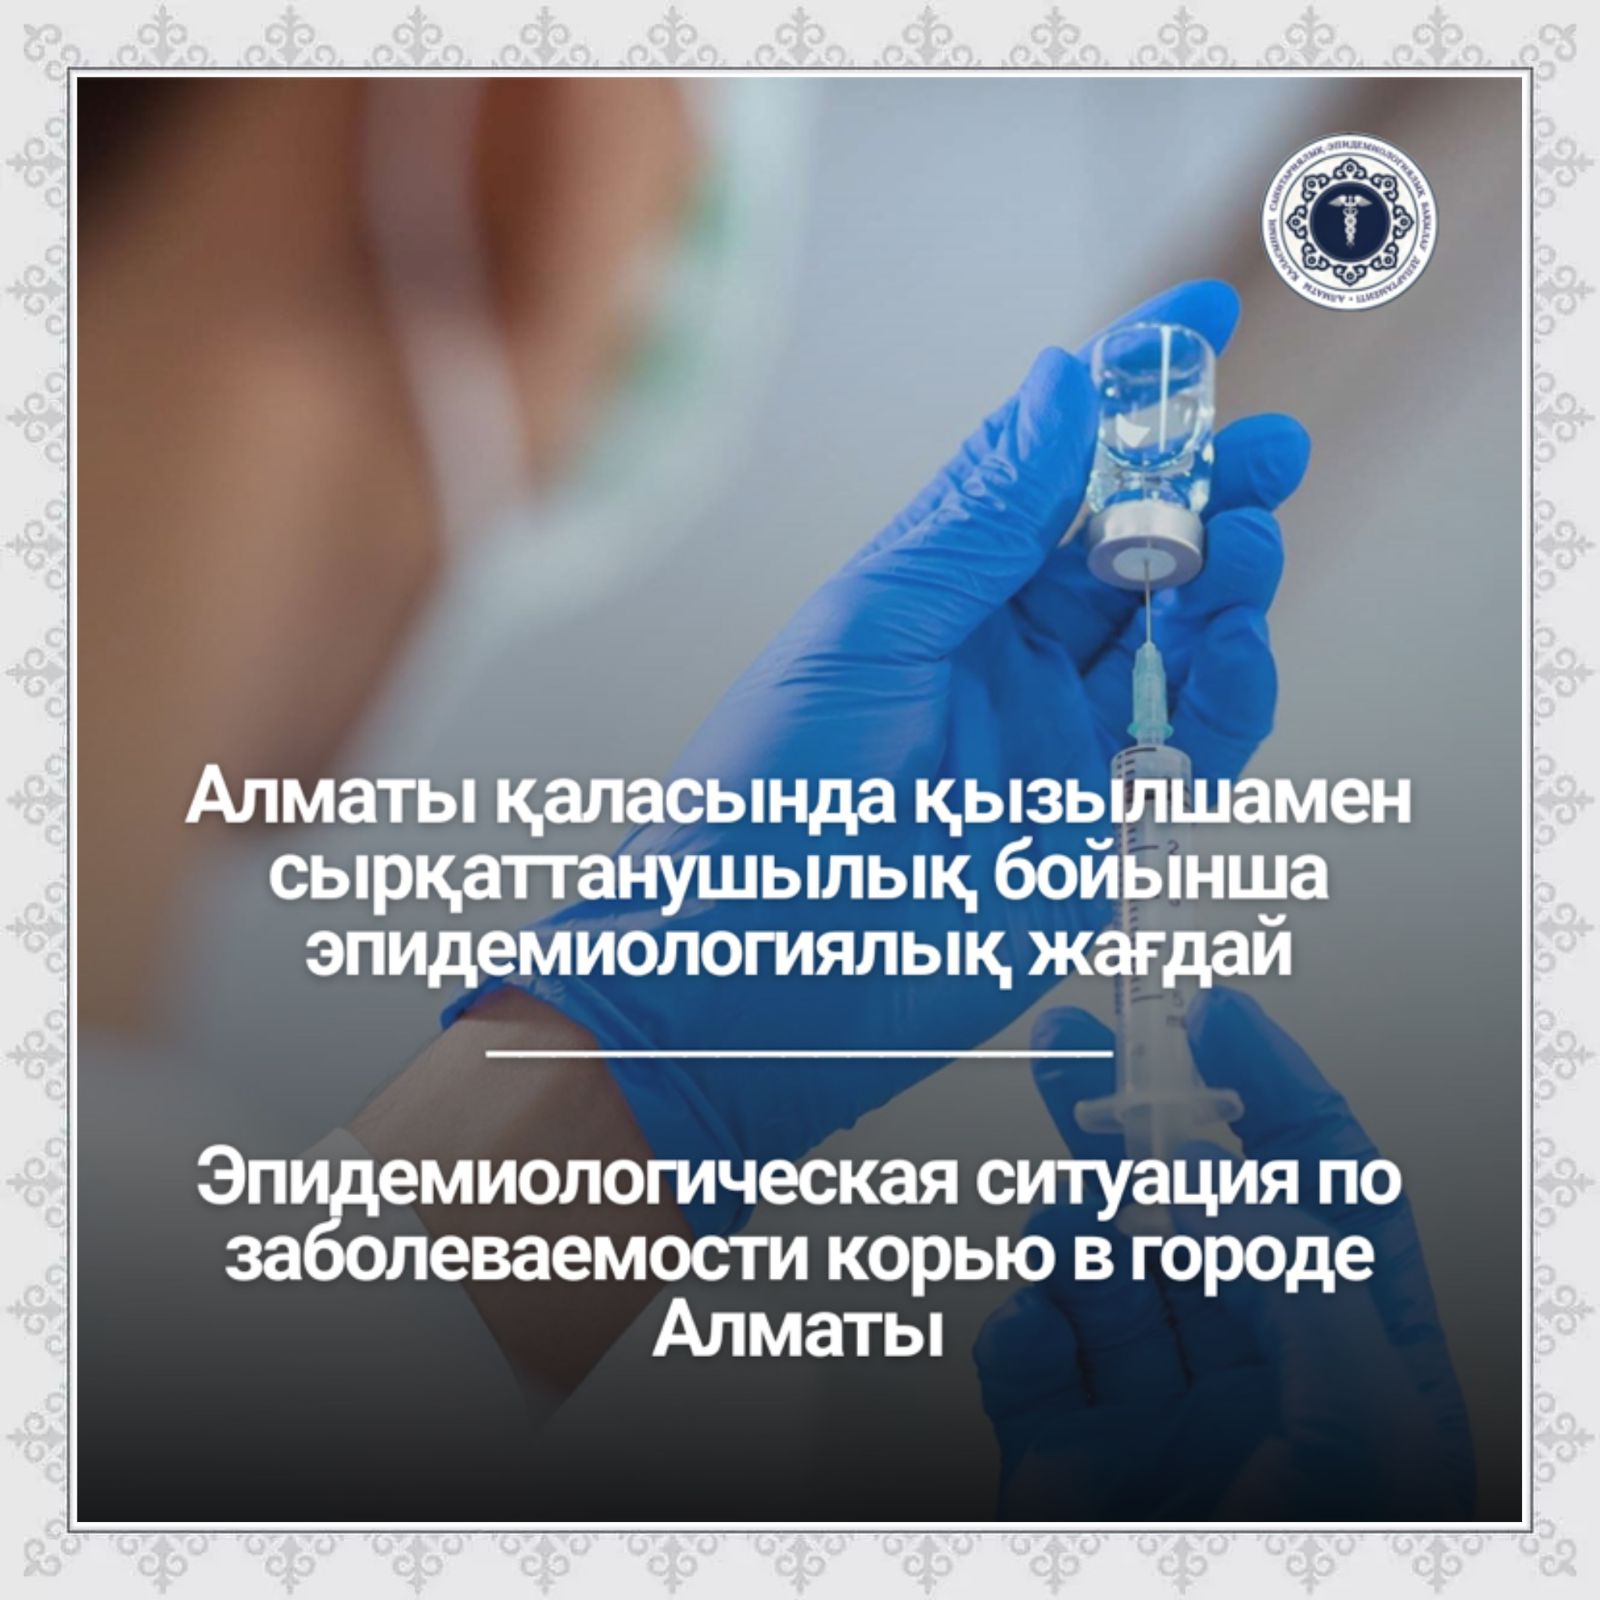 Эпидемиологическая ситуация по заболеваемости корью в городе Алматы